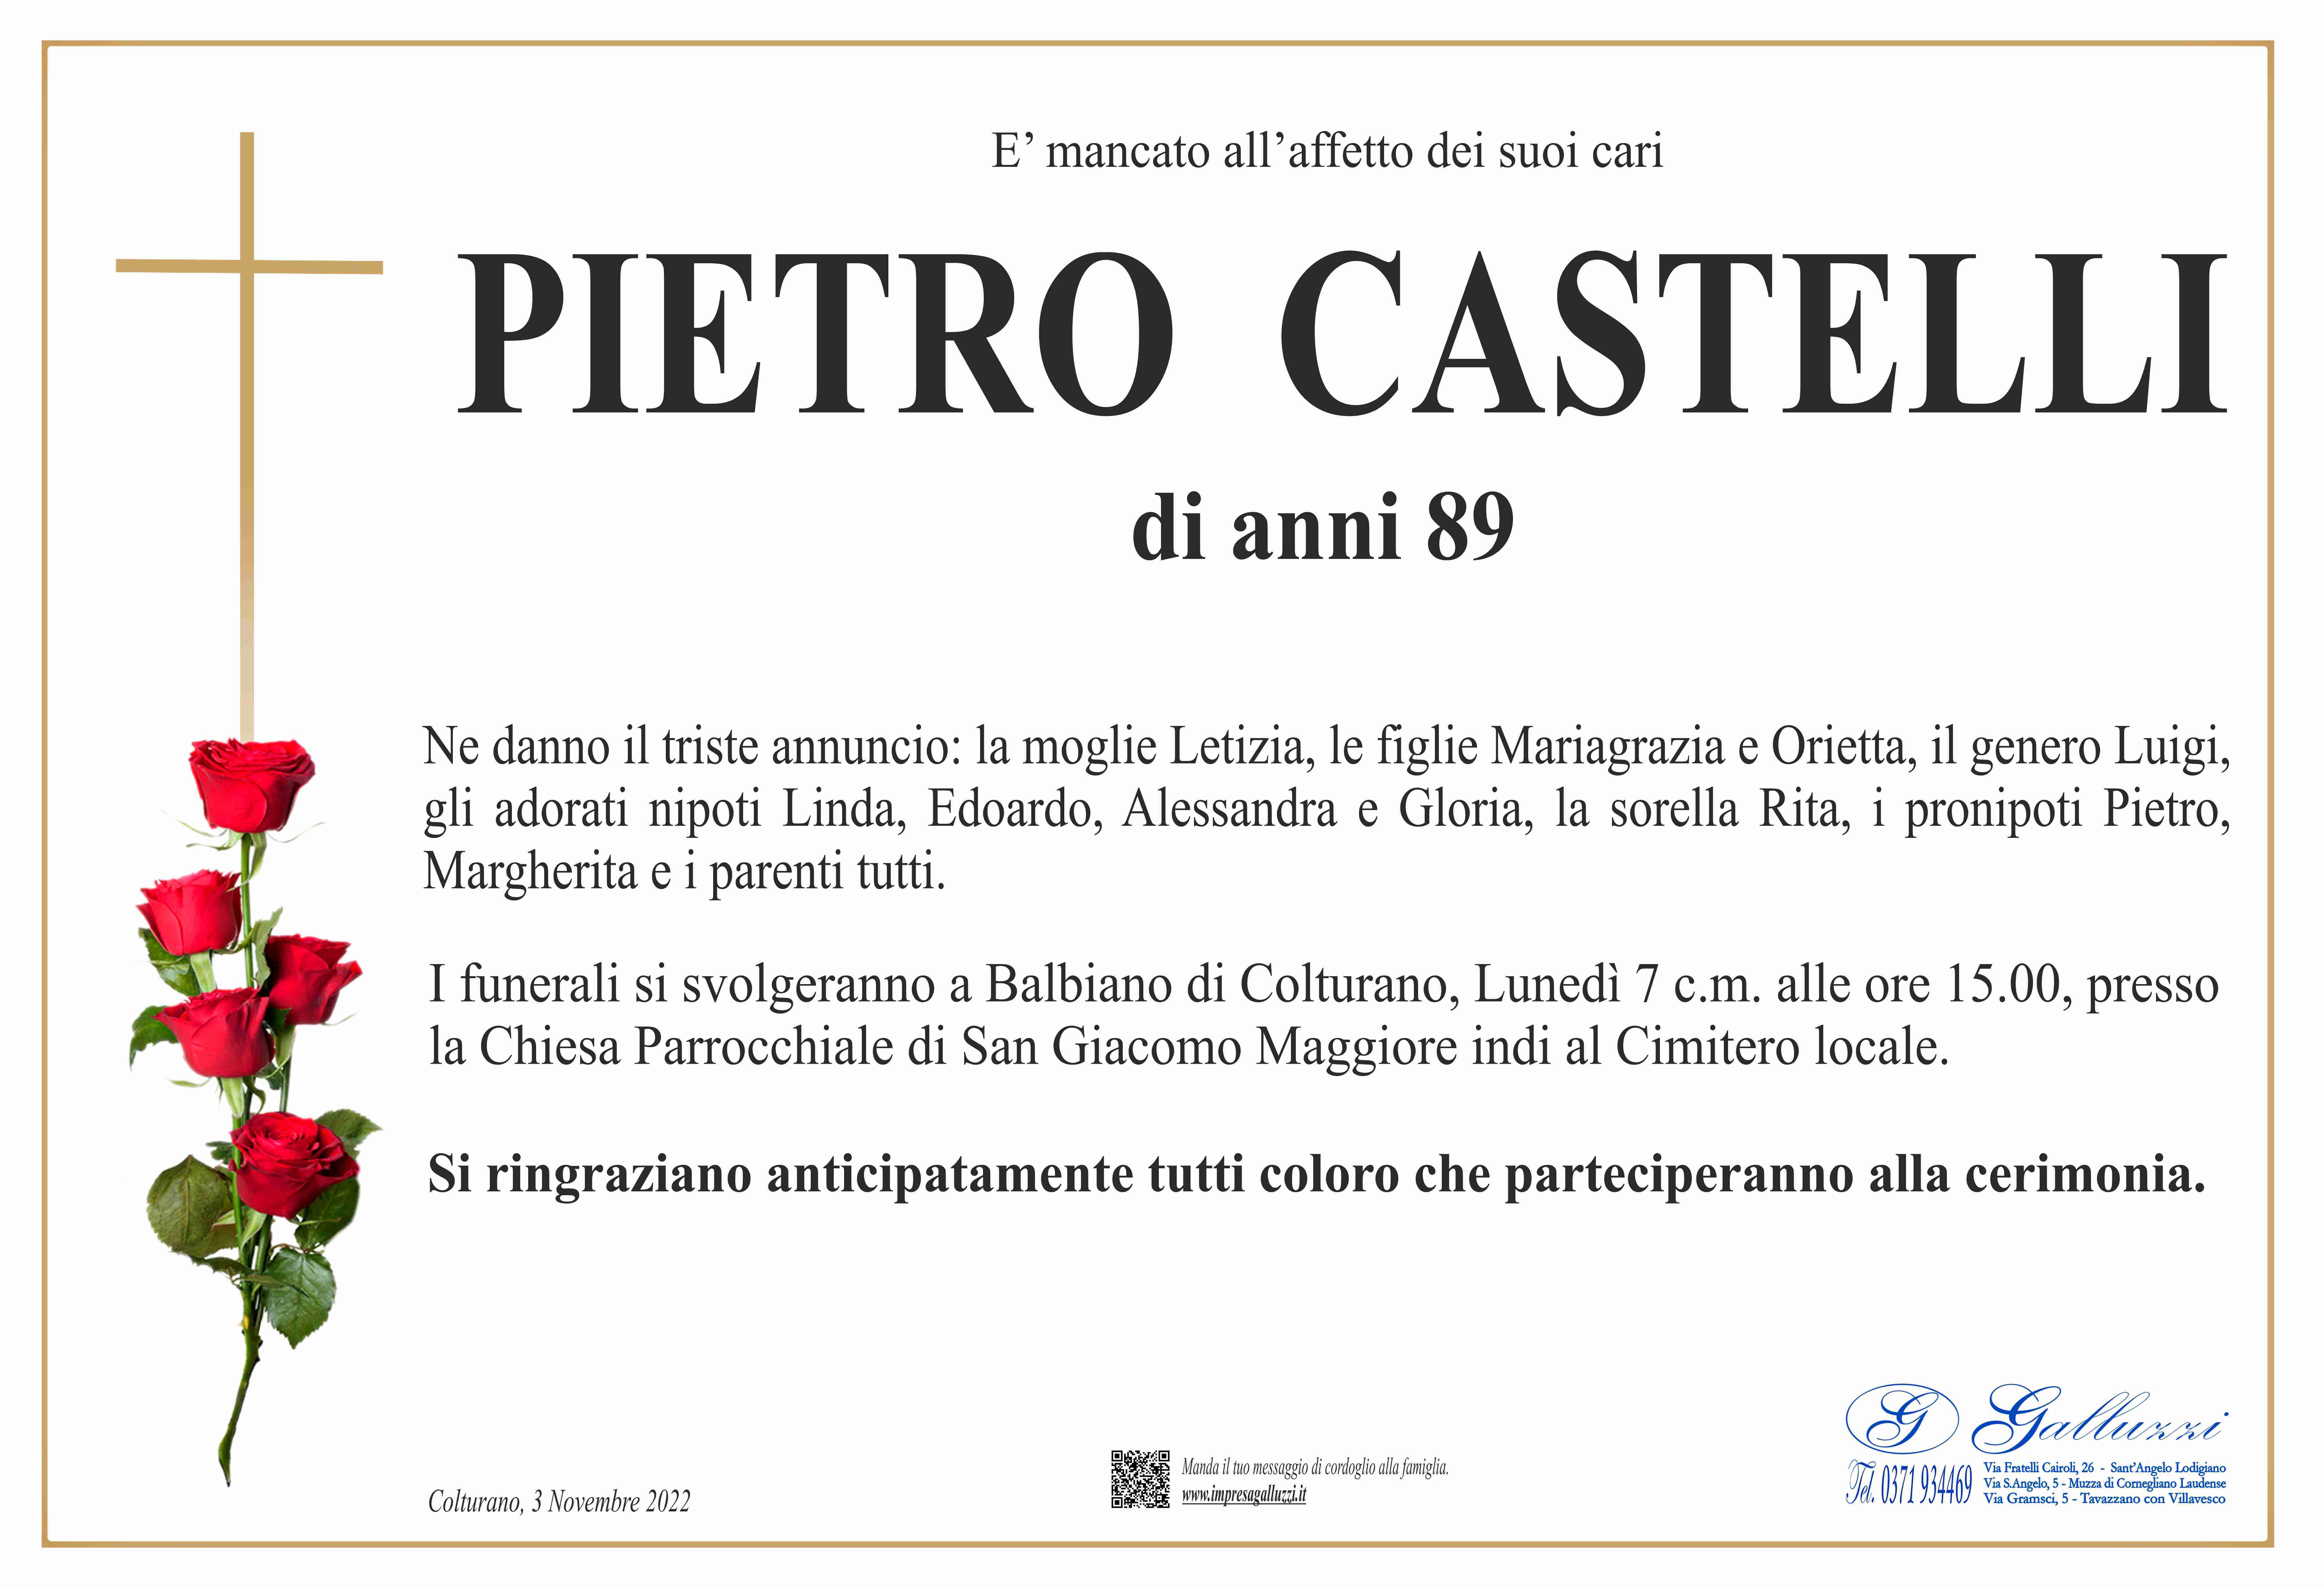 Pietro Castelli